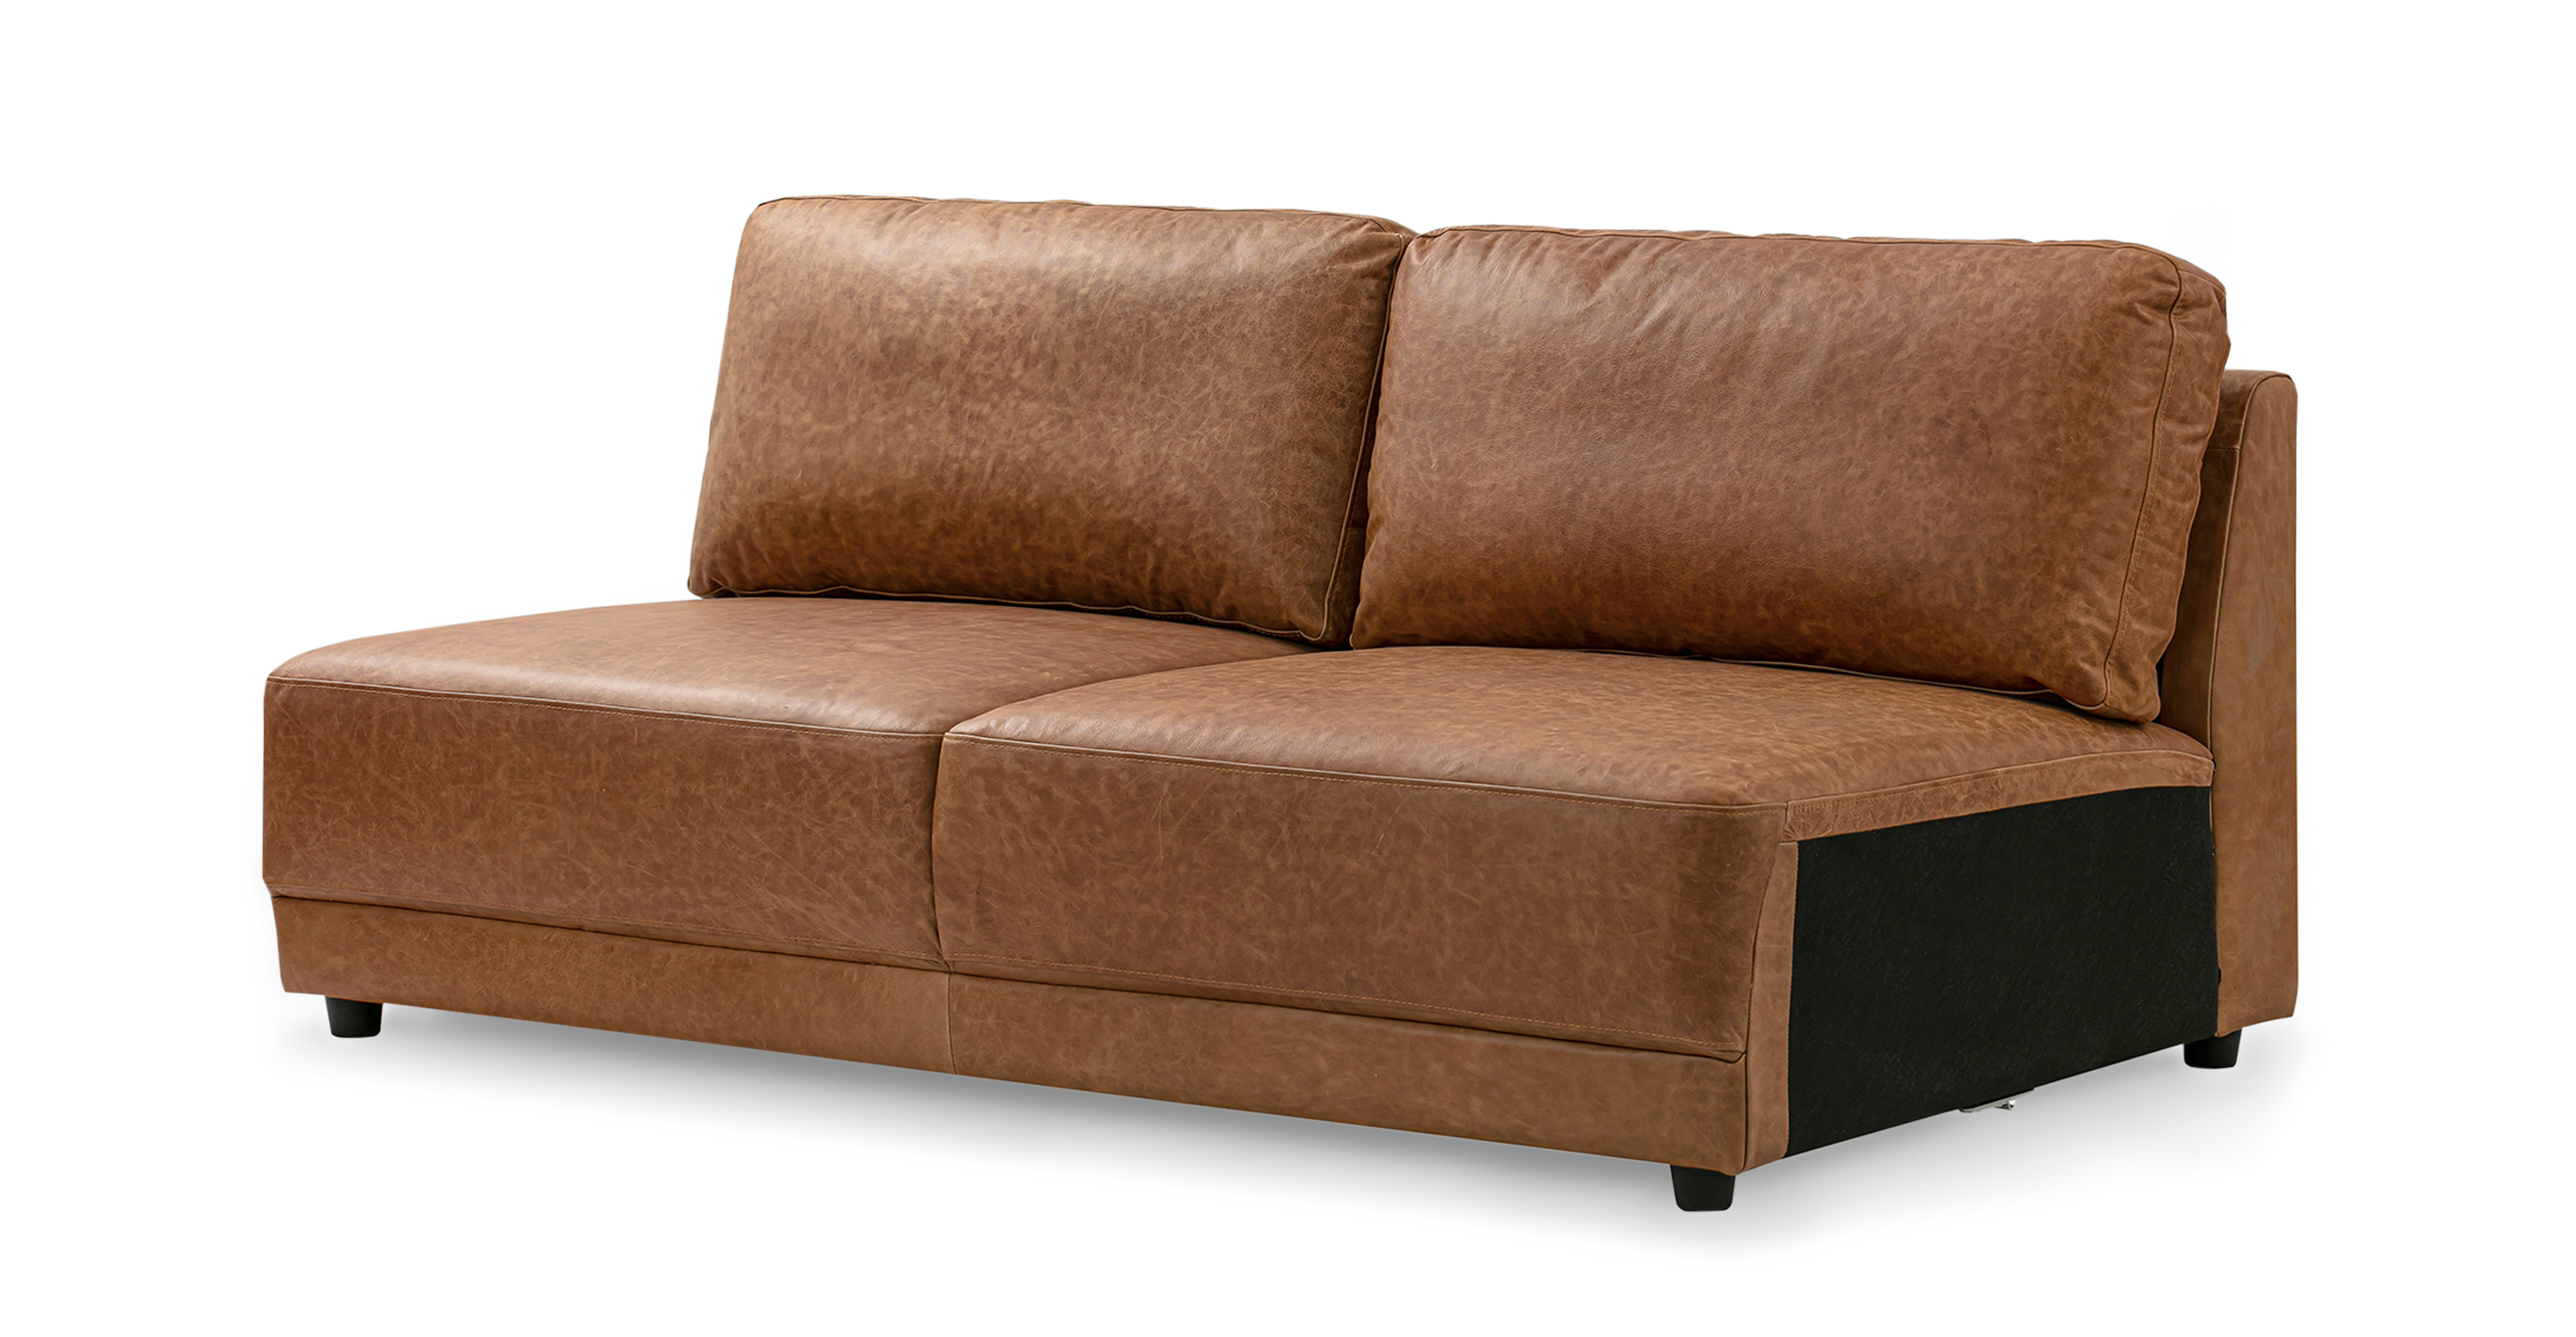 百好家 Light Luxury Minimalist Leather Sofa Small Apartment Living Room Chaise  Corner Leather Down Sofa Combination